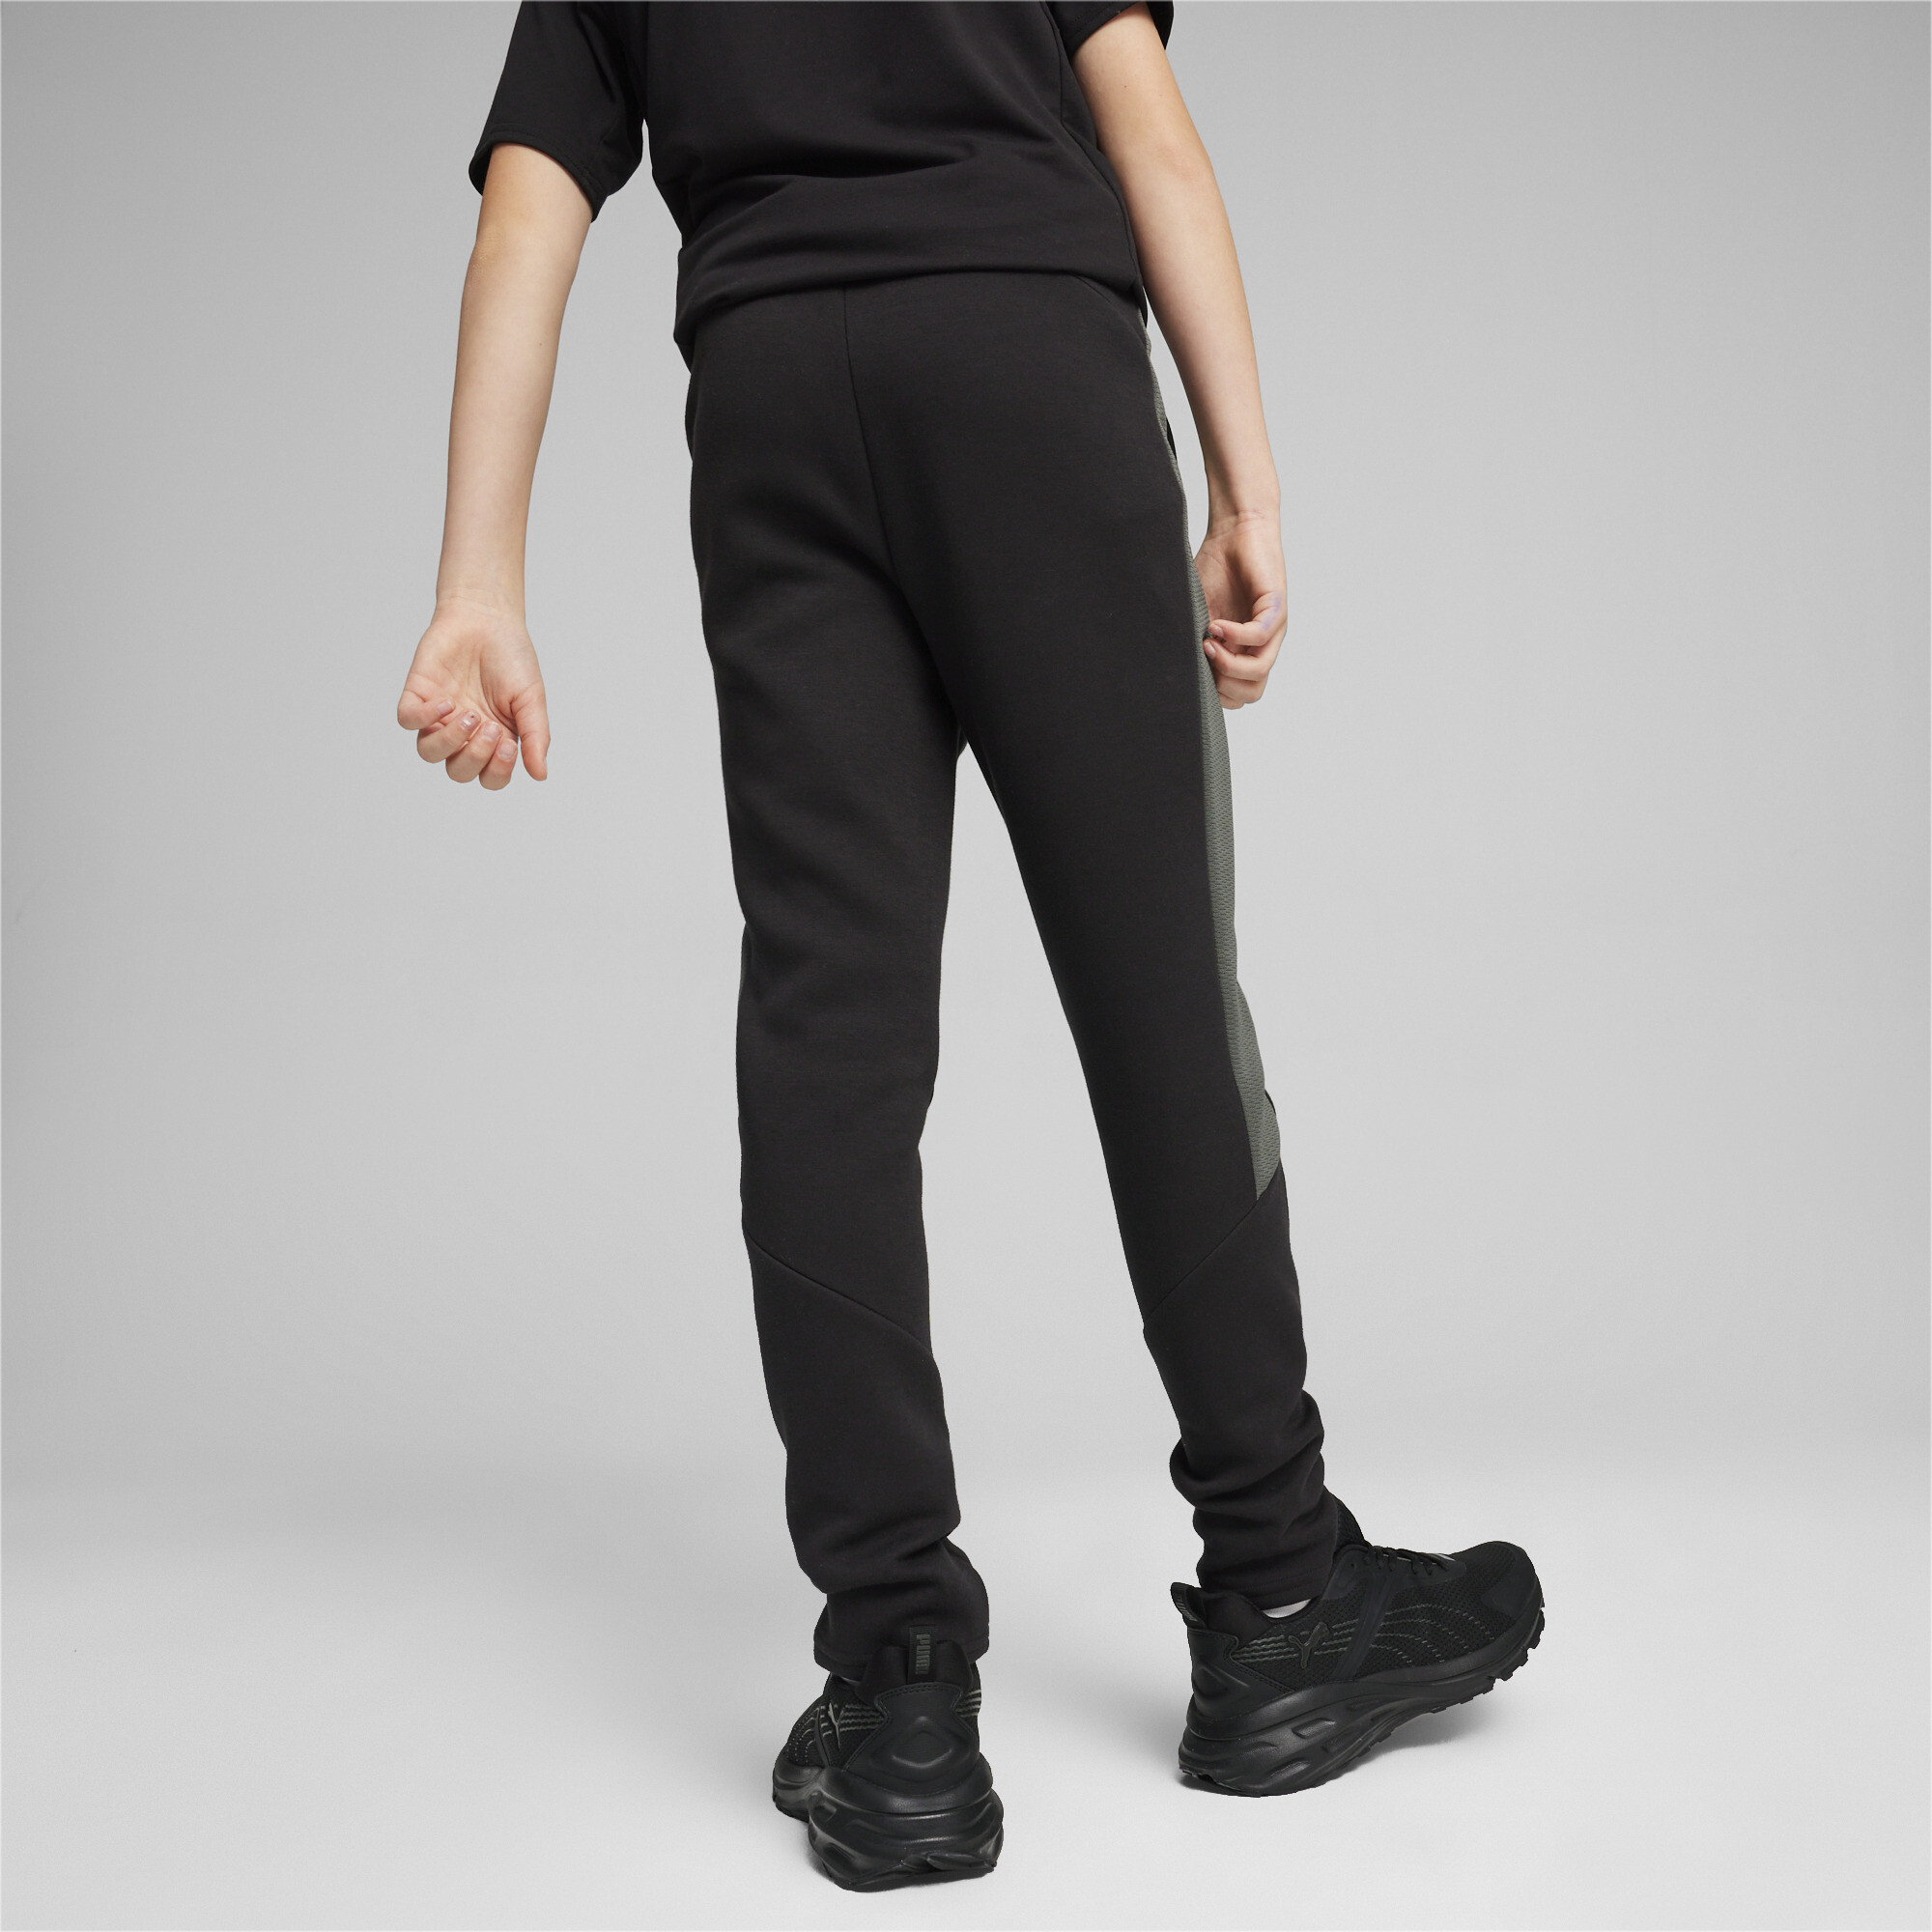 PUMA EVOSTRIPE Sweatpants In Black, Size 7-8 Youth